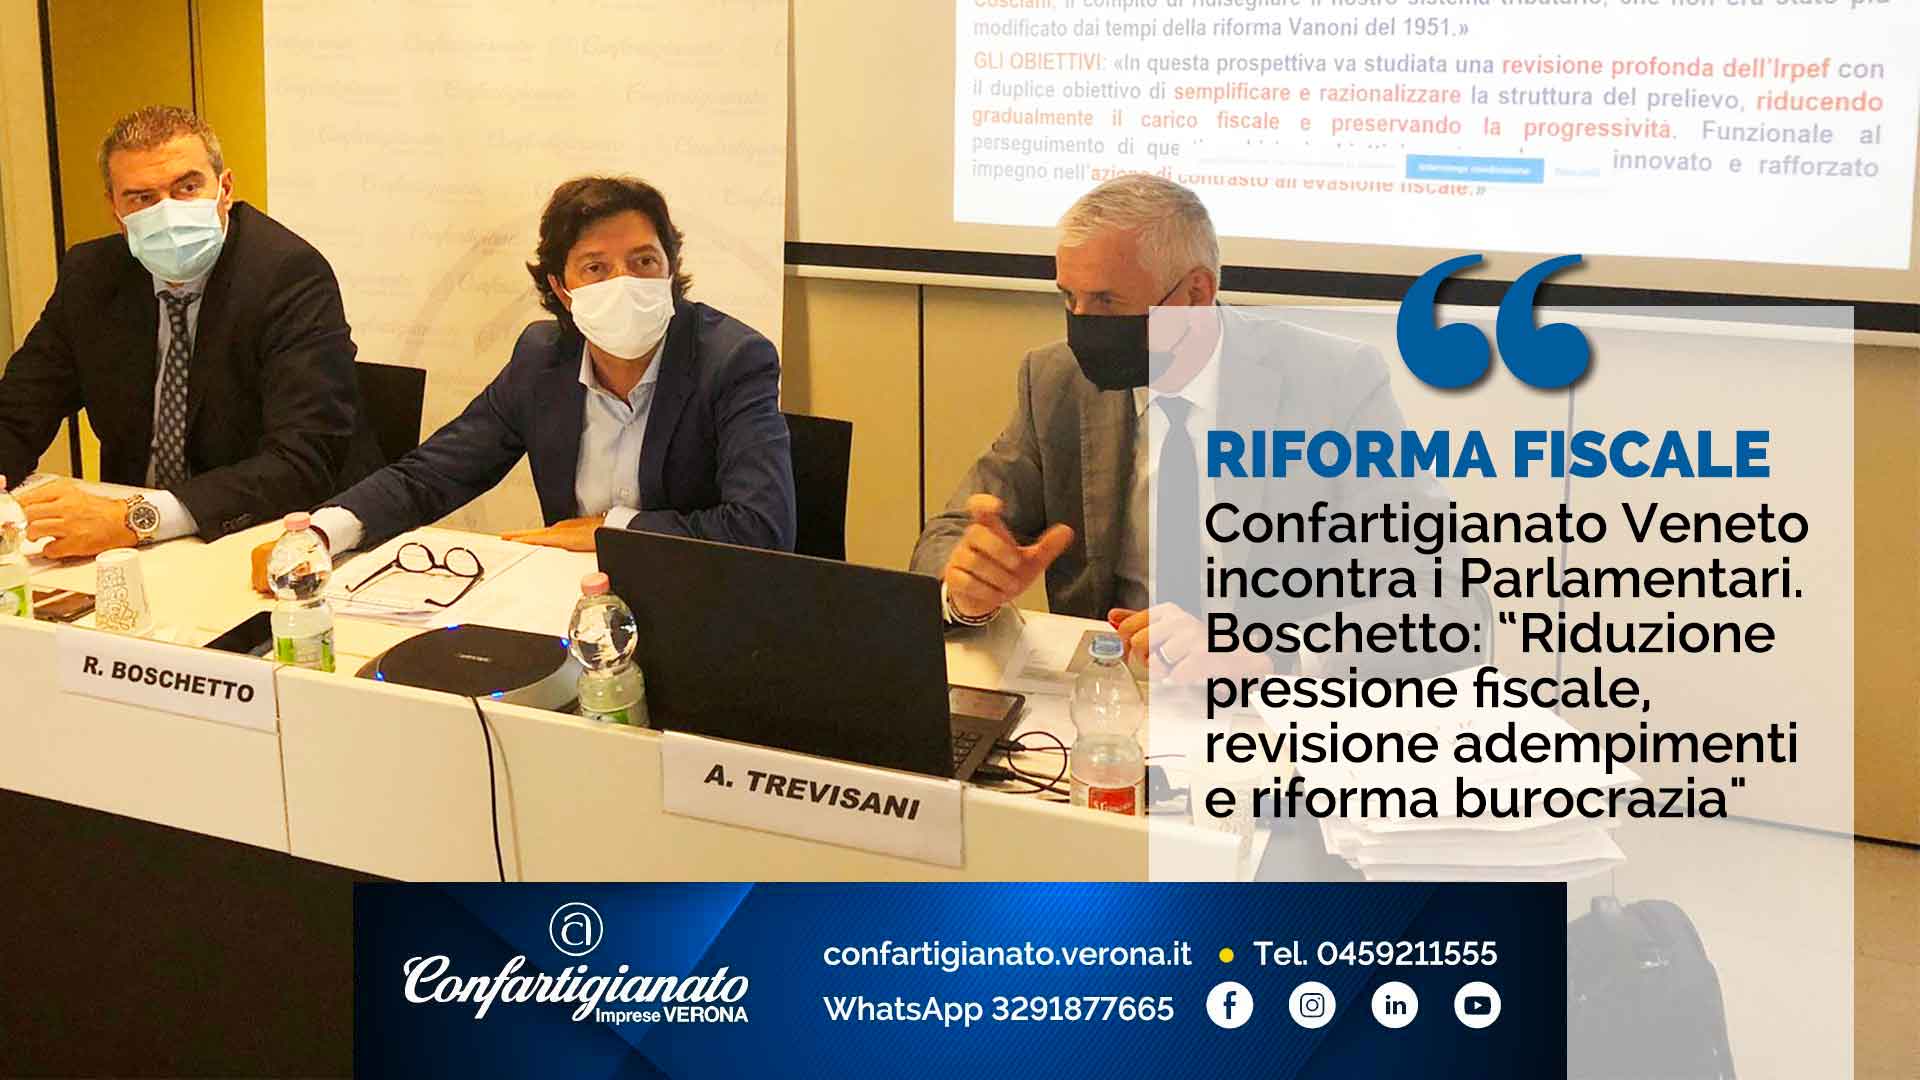 RIFORMA FISCALE – Confartigianato Veneto incontra i Parlamentari. Boschetto: “Riduzione pressione fiscale, revisione adempimenti e riforma burocrazia"